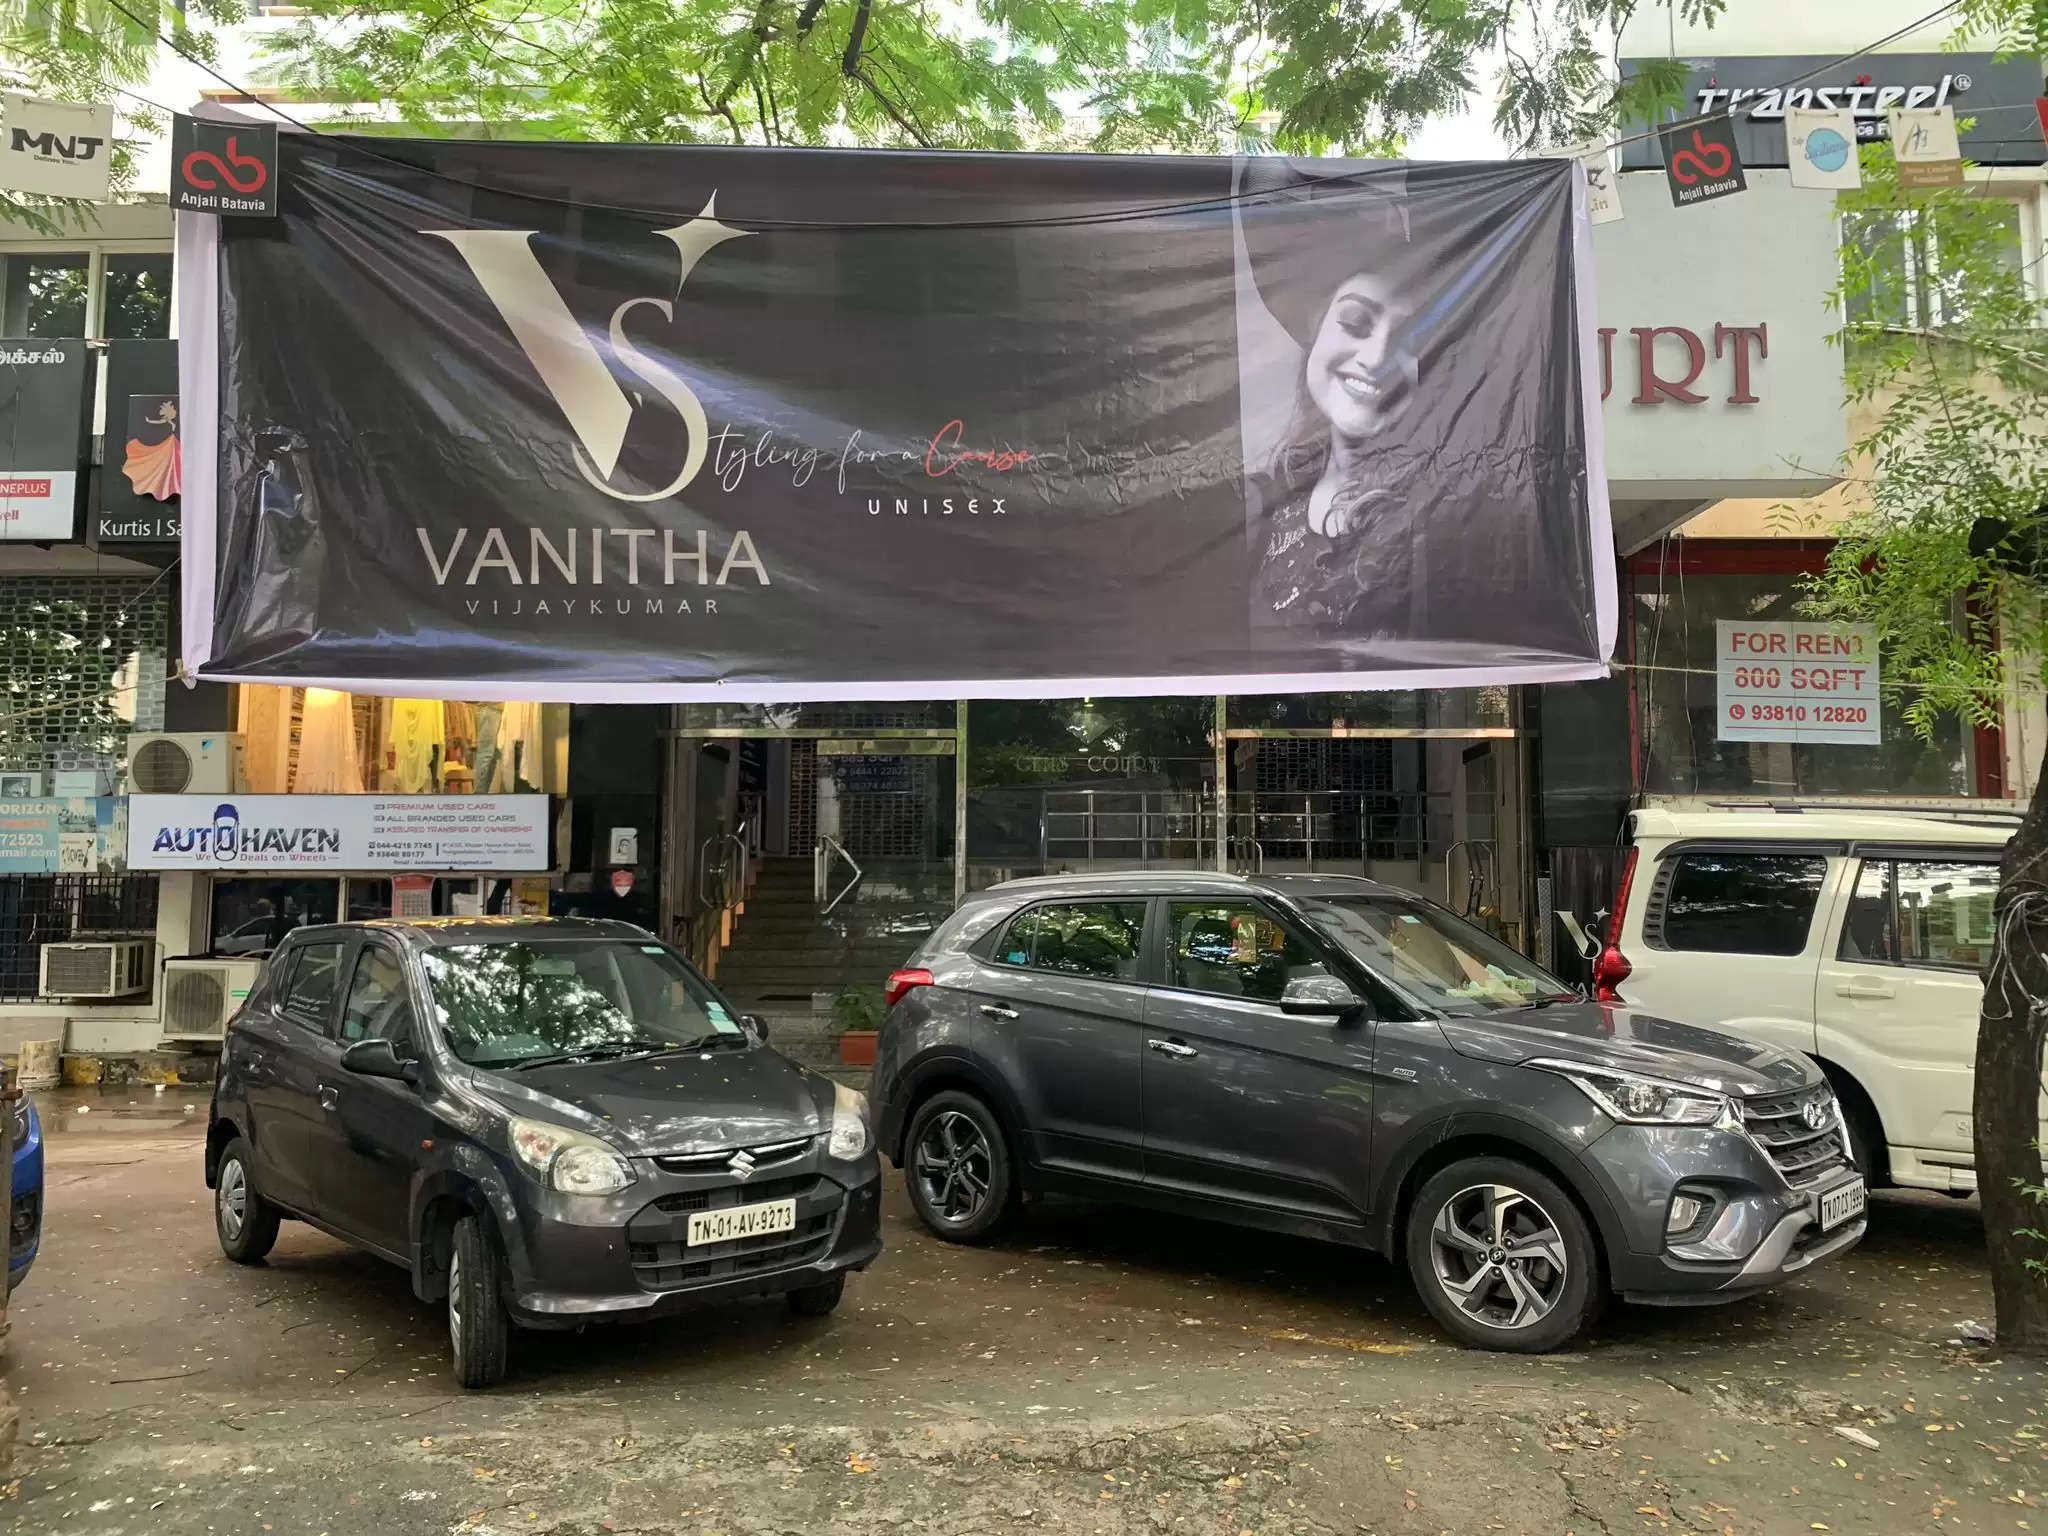 Vanitha-new-shop